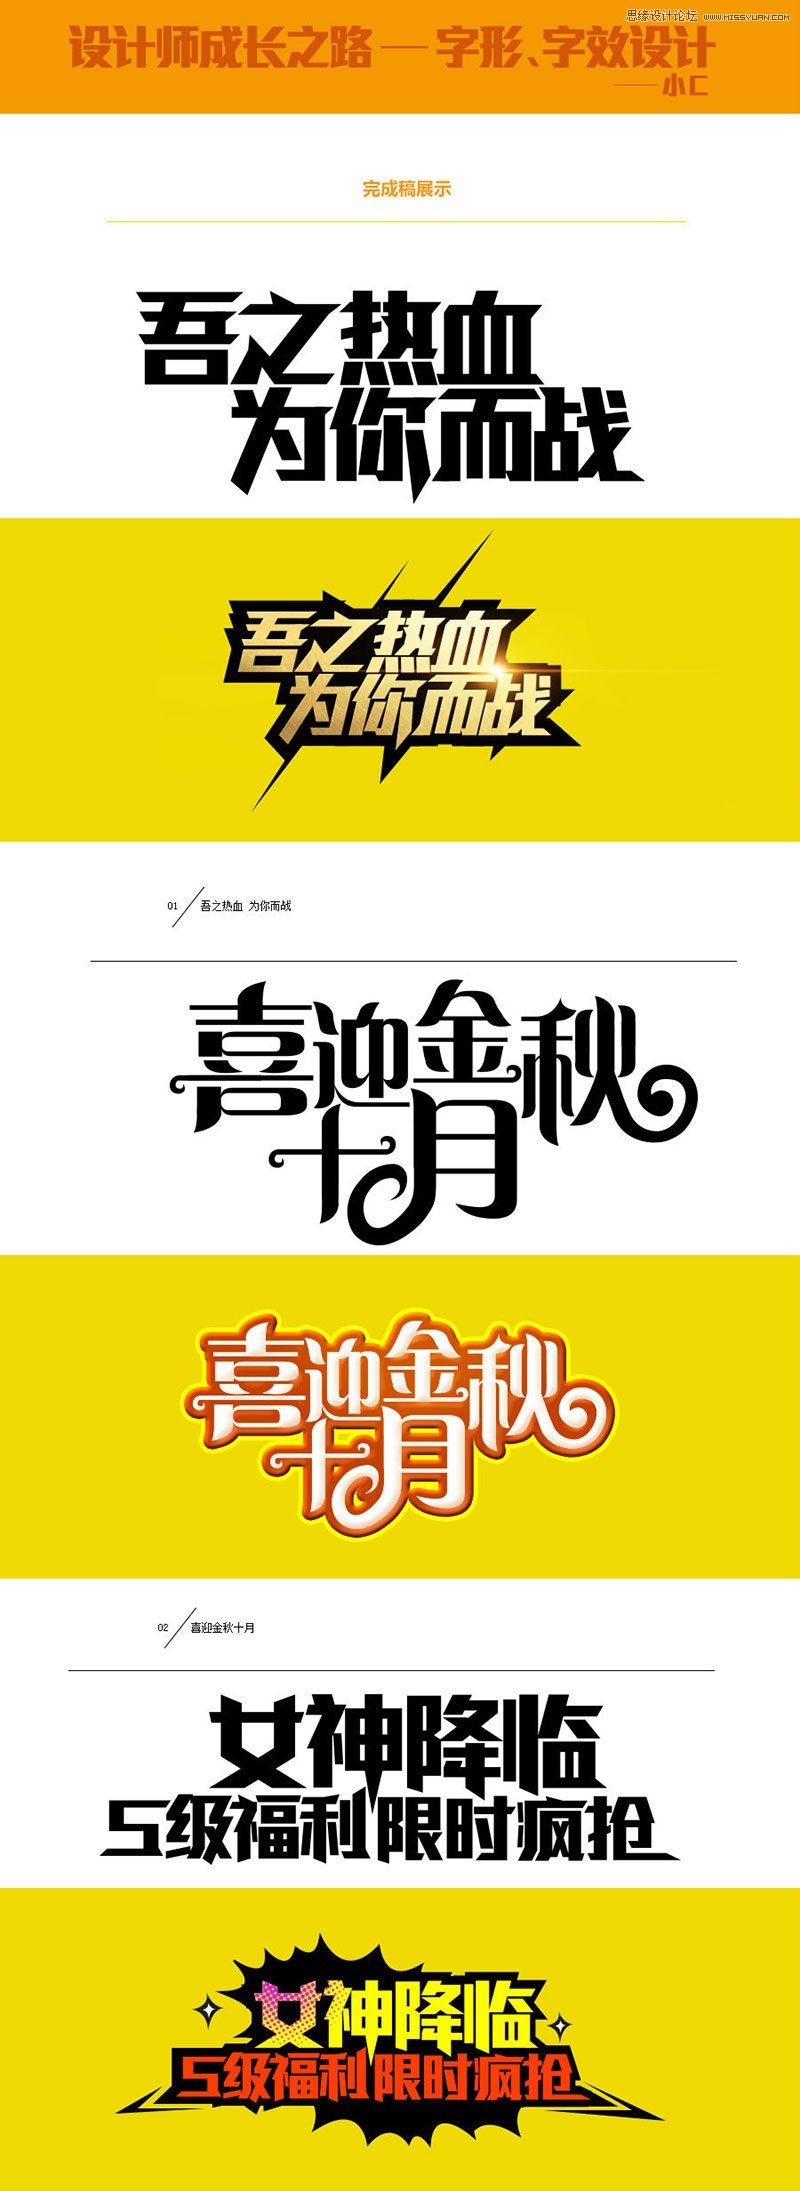 中文海报字体设计心得技巧1